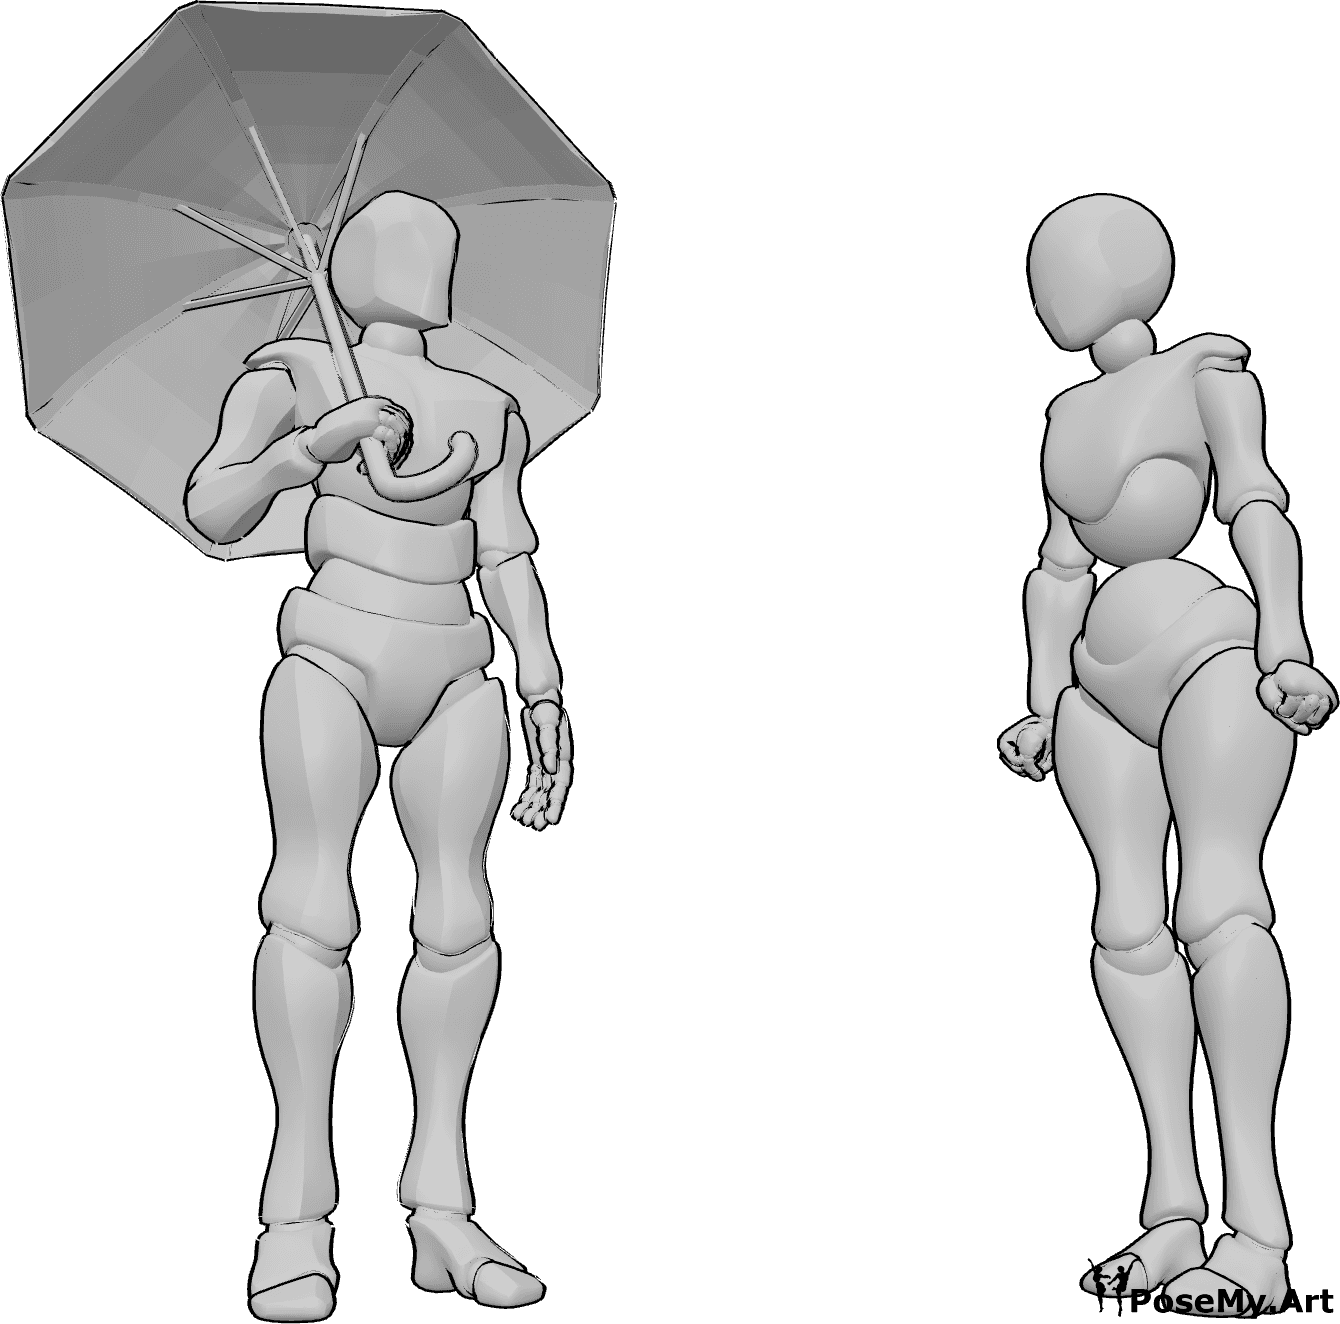 Posen-Referenz- Weiblich ohne Schirm-Pose - Das Männchen hält einen Regenschirm und blickt die Frau an, die wütend ist.